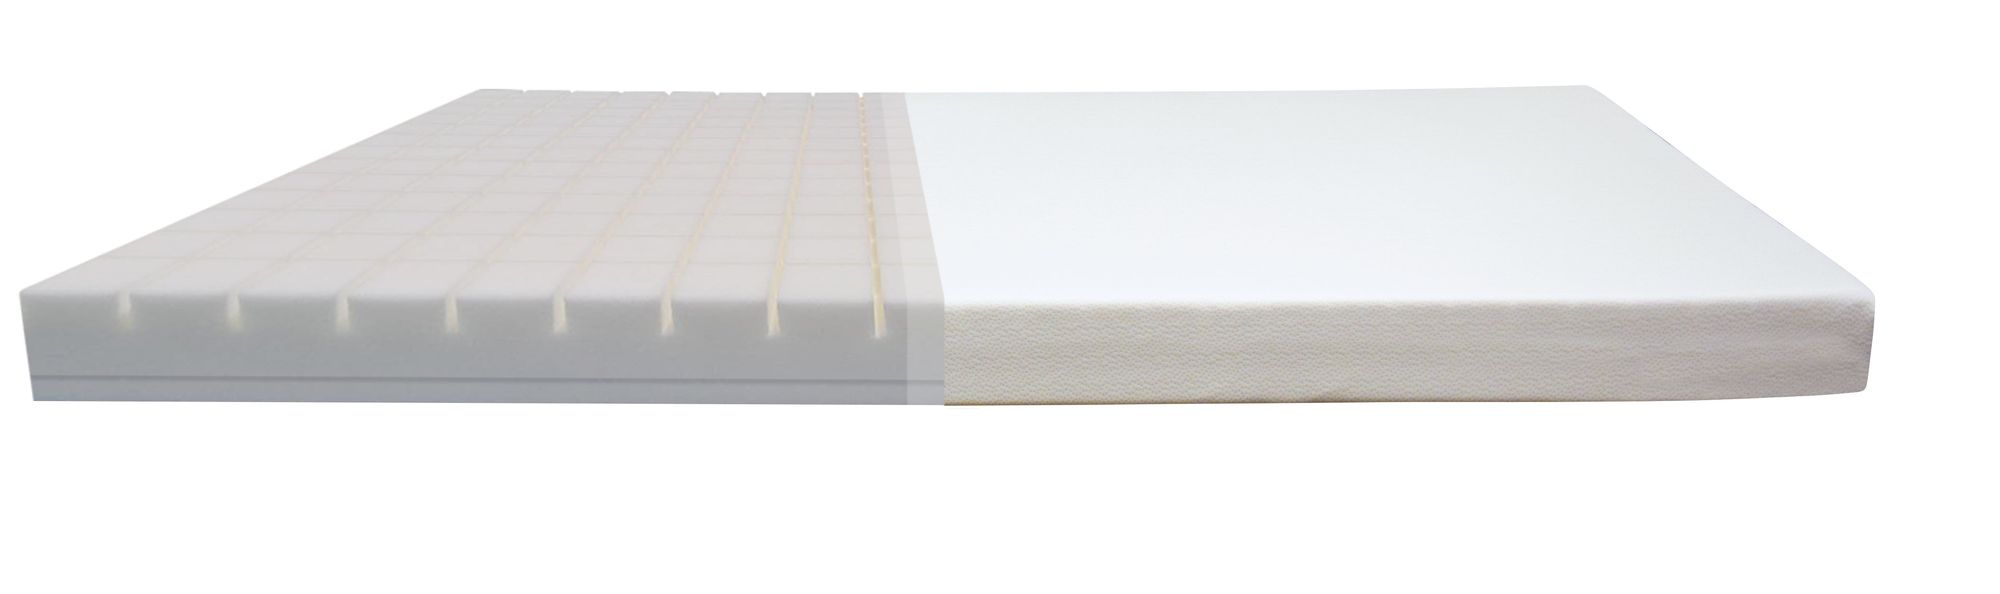 FLEXA Foam mattress with cotton cover 190x90